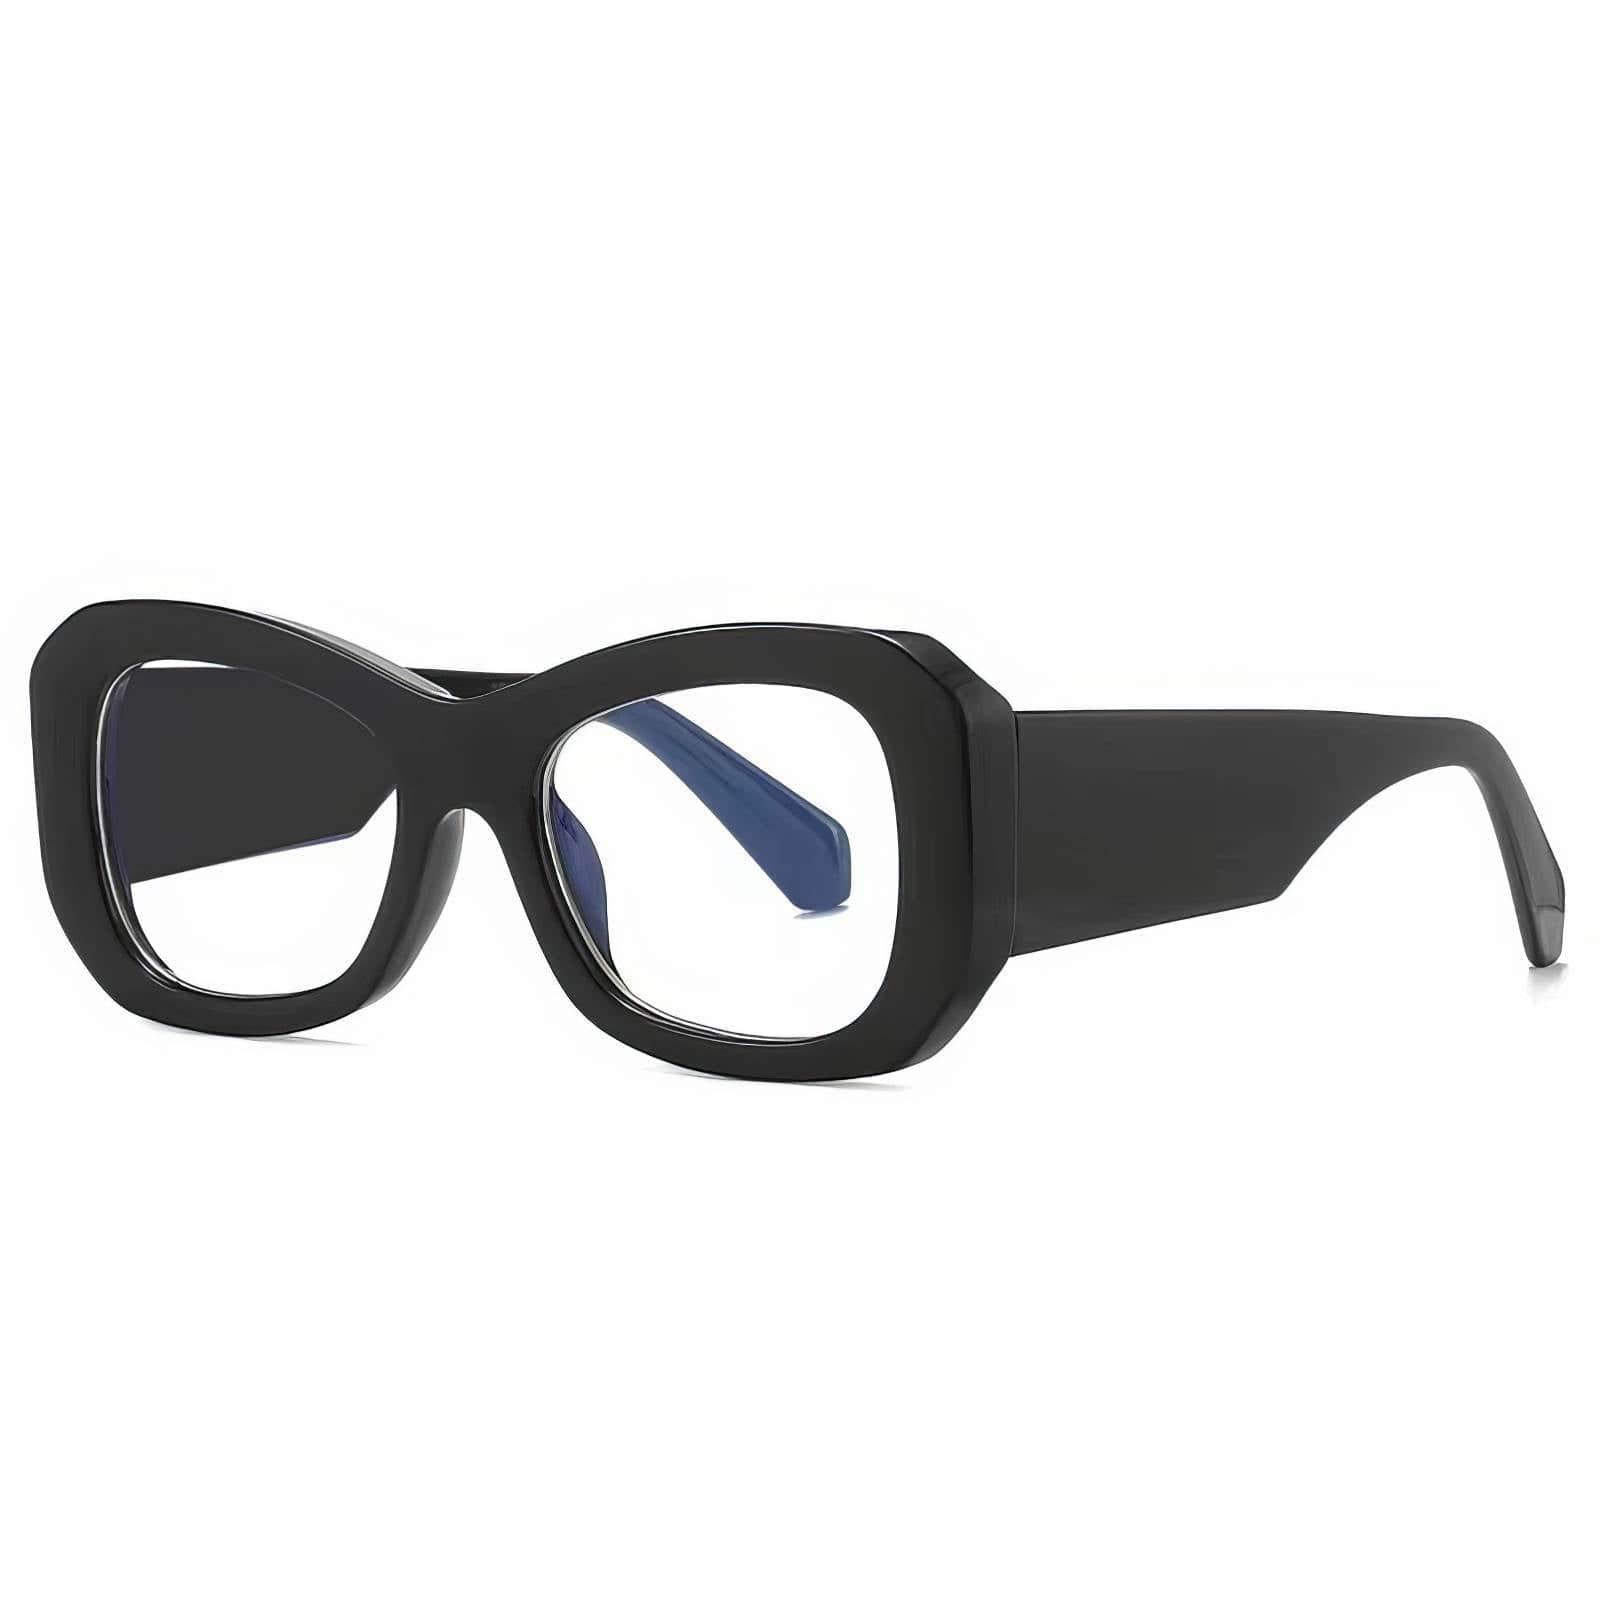 Funky Trending Square Sunglasses Black/White / Resin